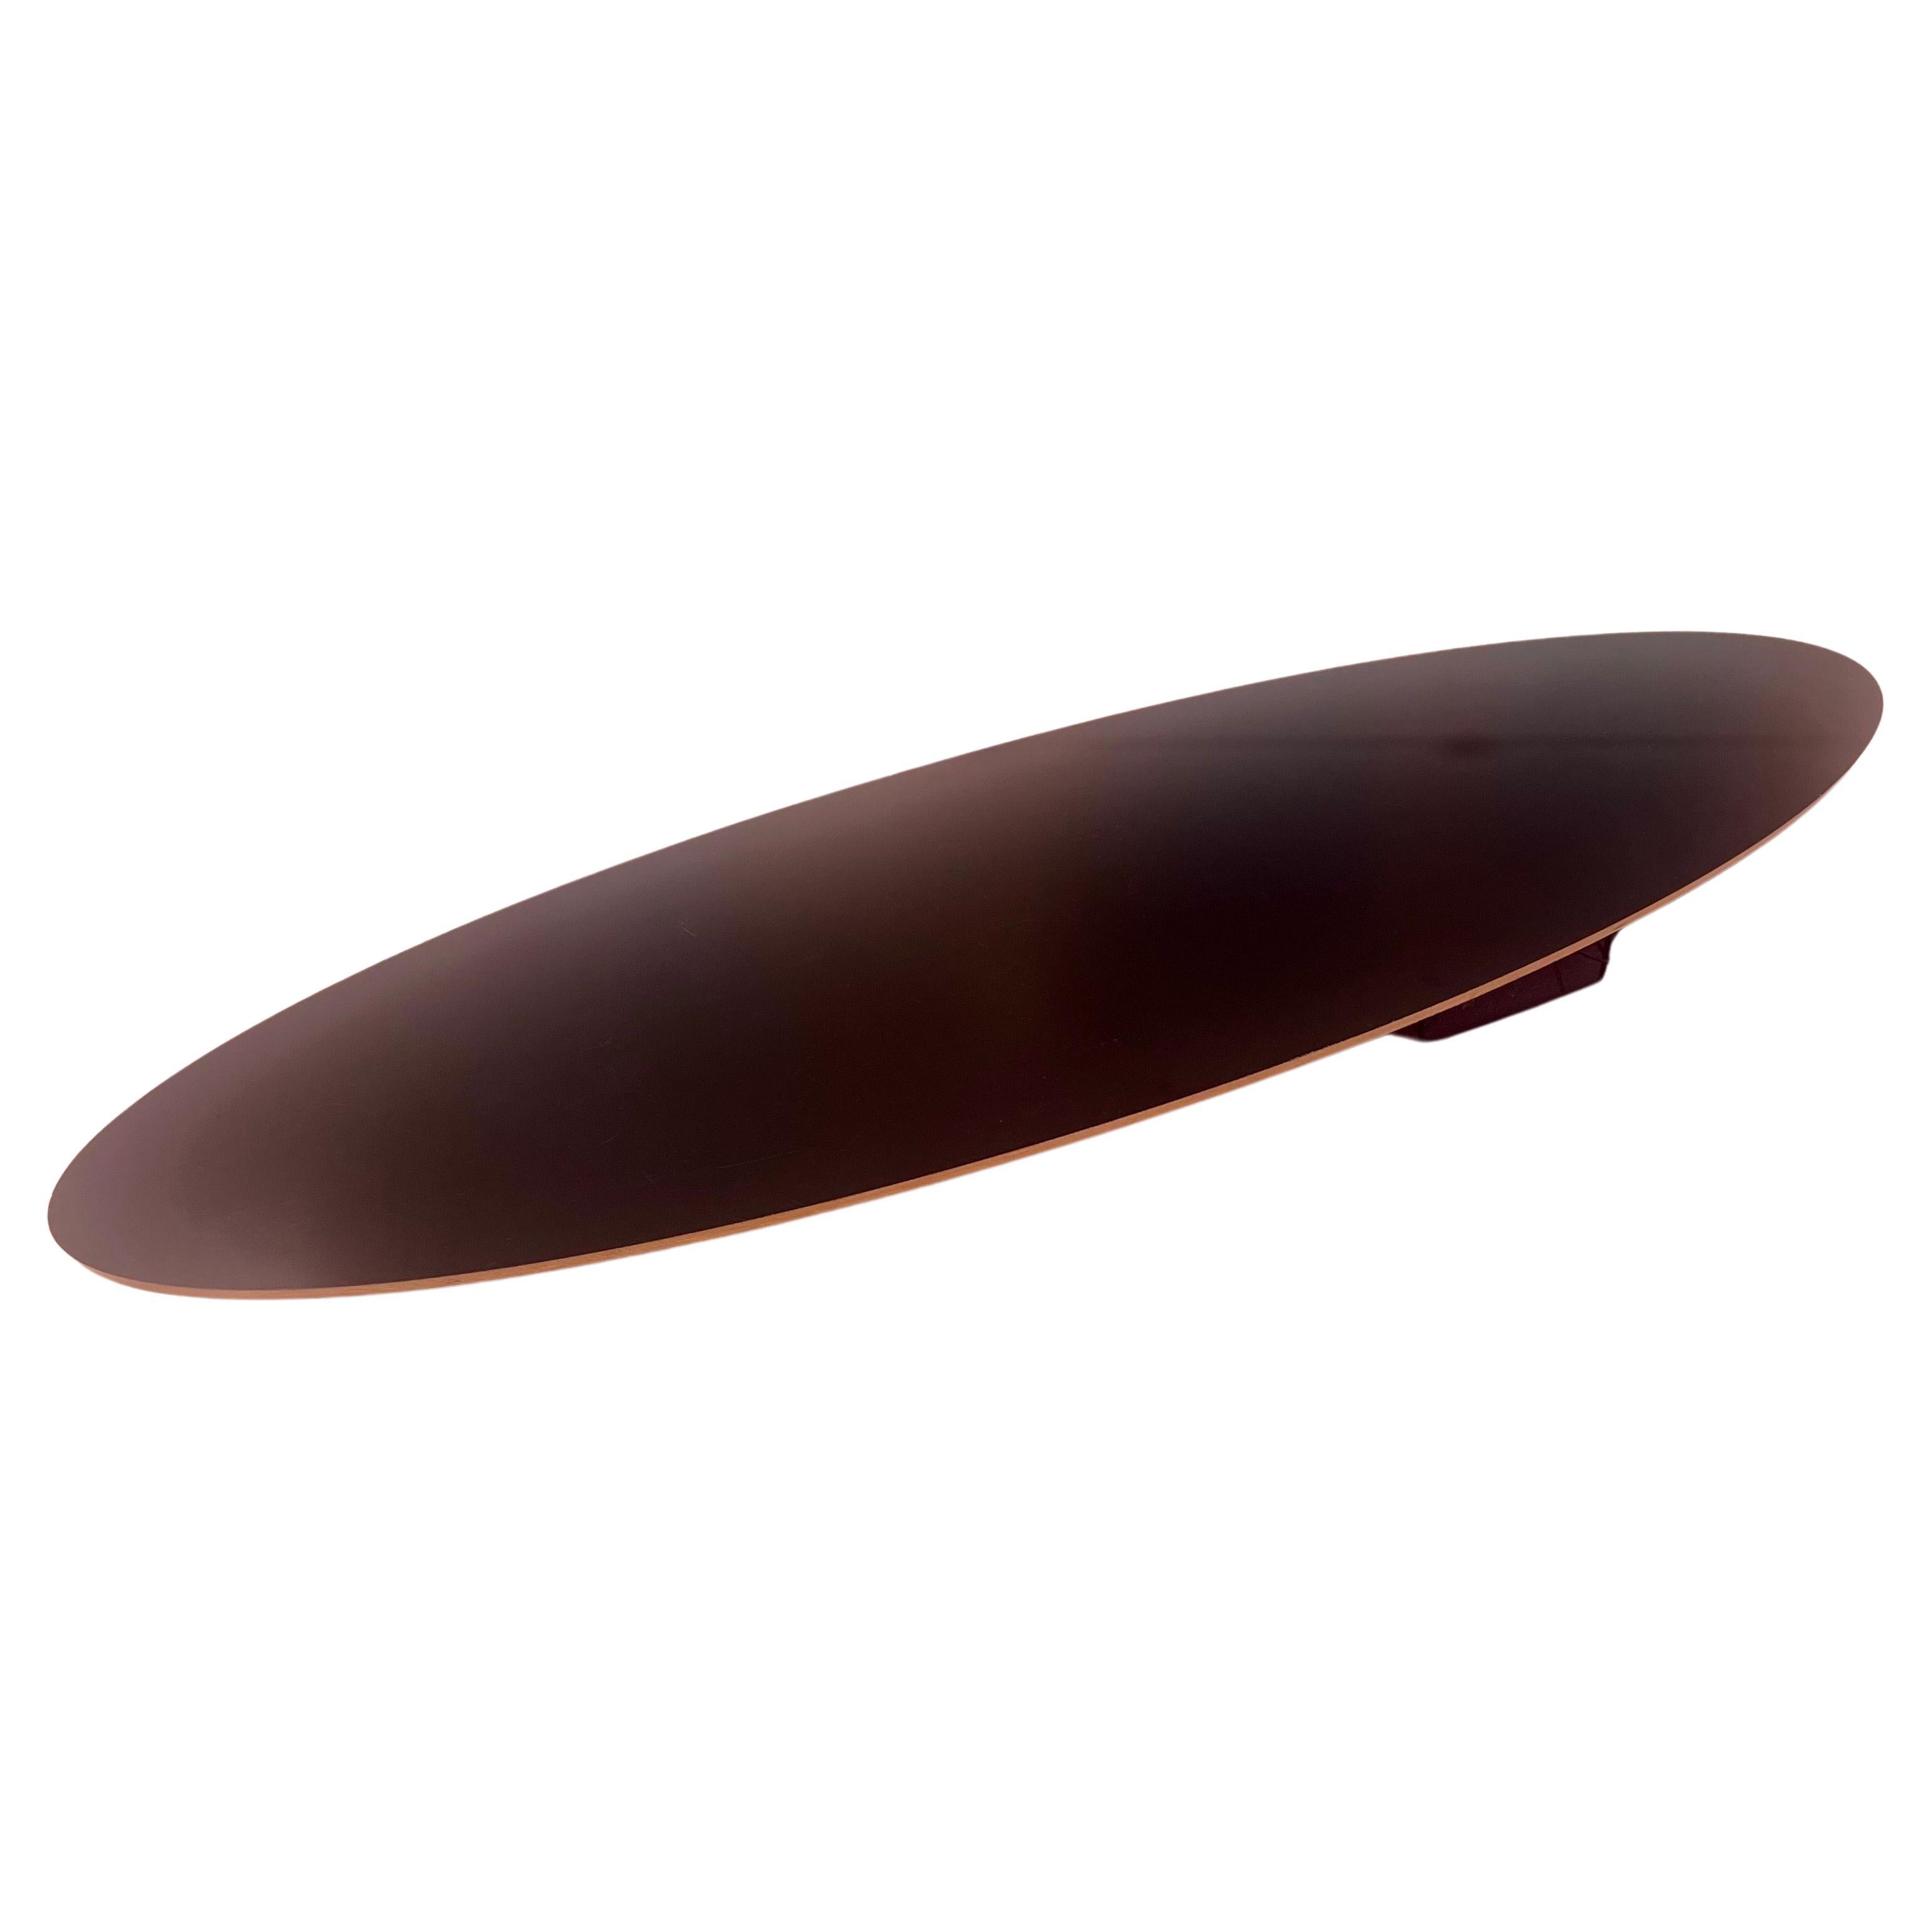 1990; s Original lange Surfbrett ovalen Couchtisch von Eames entworfen, für Herman Miller schönen Zustand ein Muss für jeden Mid Century, dänische Moderne Heimtextilien schönen Zustand ein paar Flohbisse auf dem Rand, wie gezeigt.